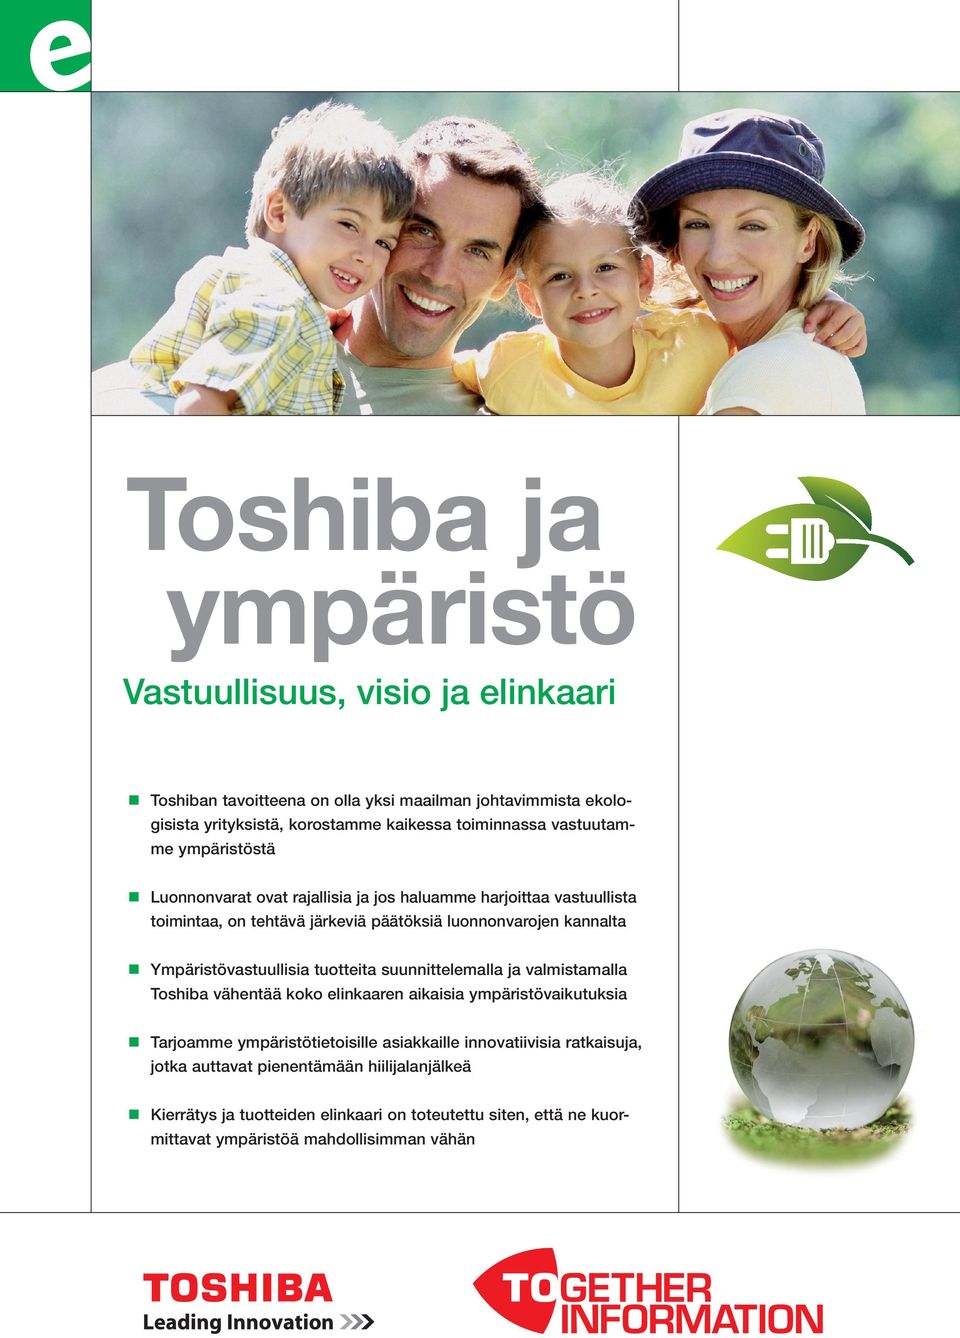 Ympäristövastuullisia tuotteita suunnittelemalla ja valmistamalla Toshiba vähentää koko elinkaaren aikaisia ympäristövaikutuksia Tarjoamme ympäristötietoisille